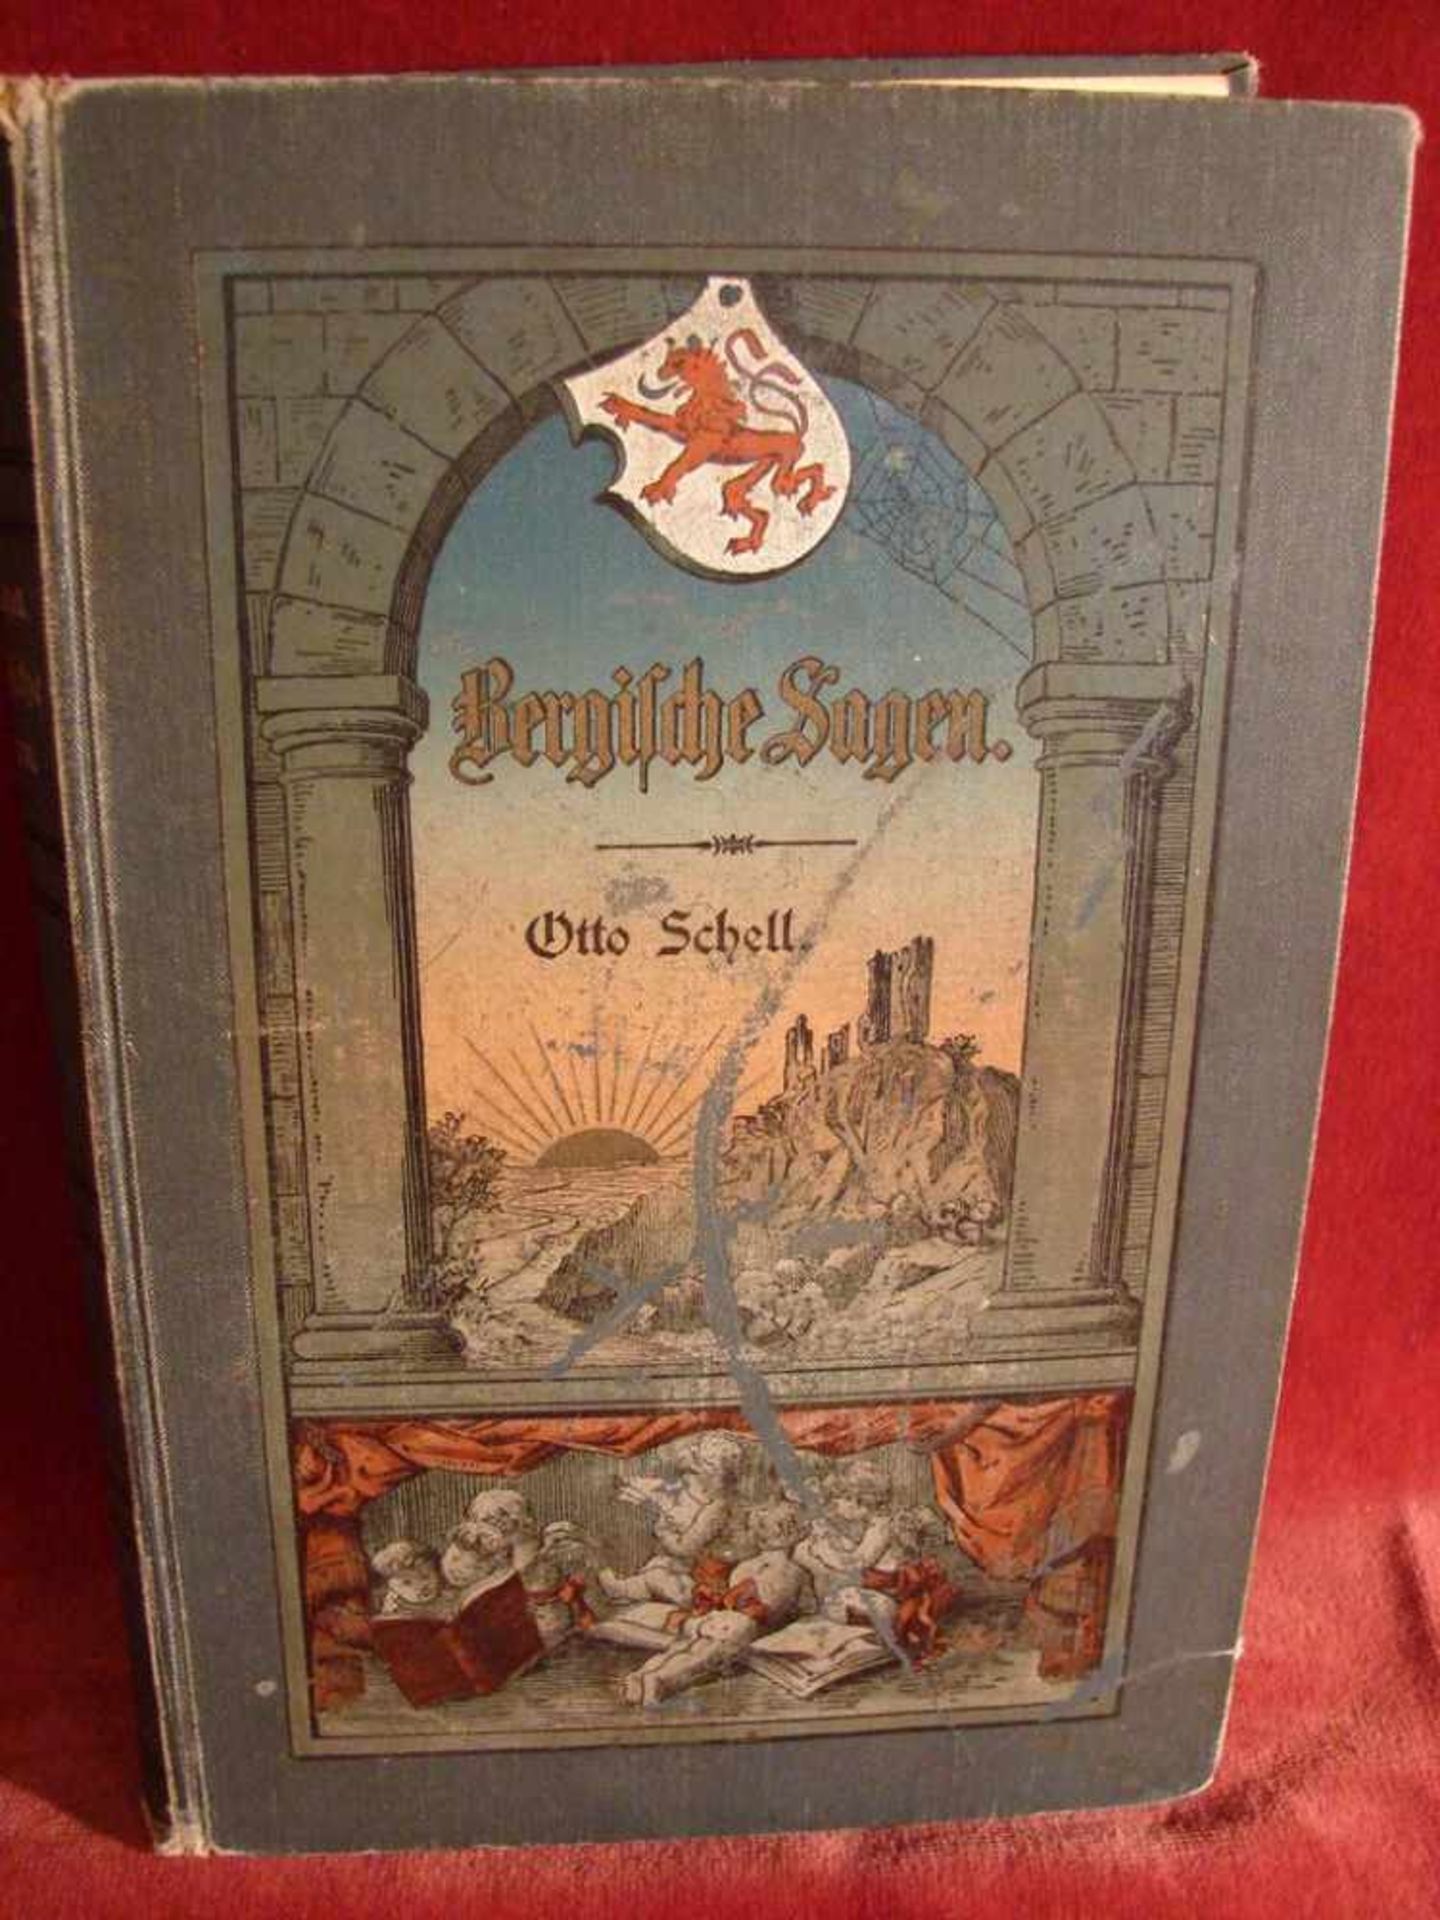 Bergische Sagen, von Otto Schell, aus dem Jahr 1897